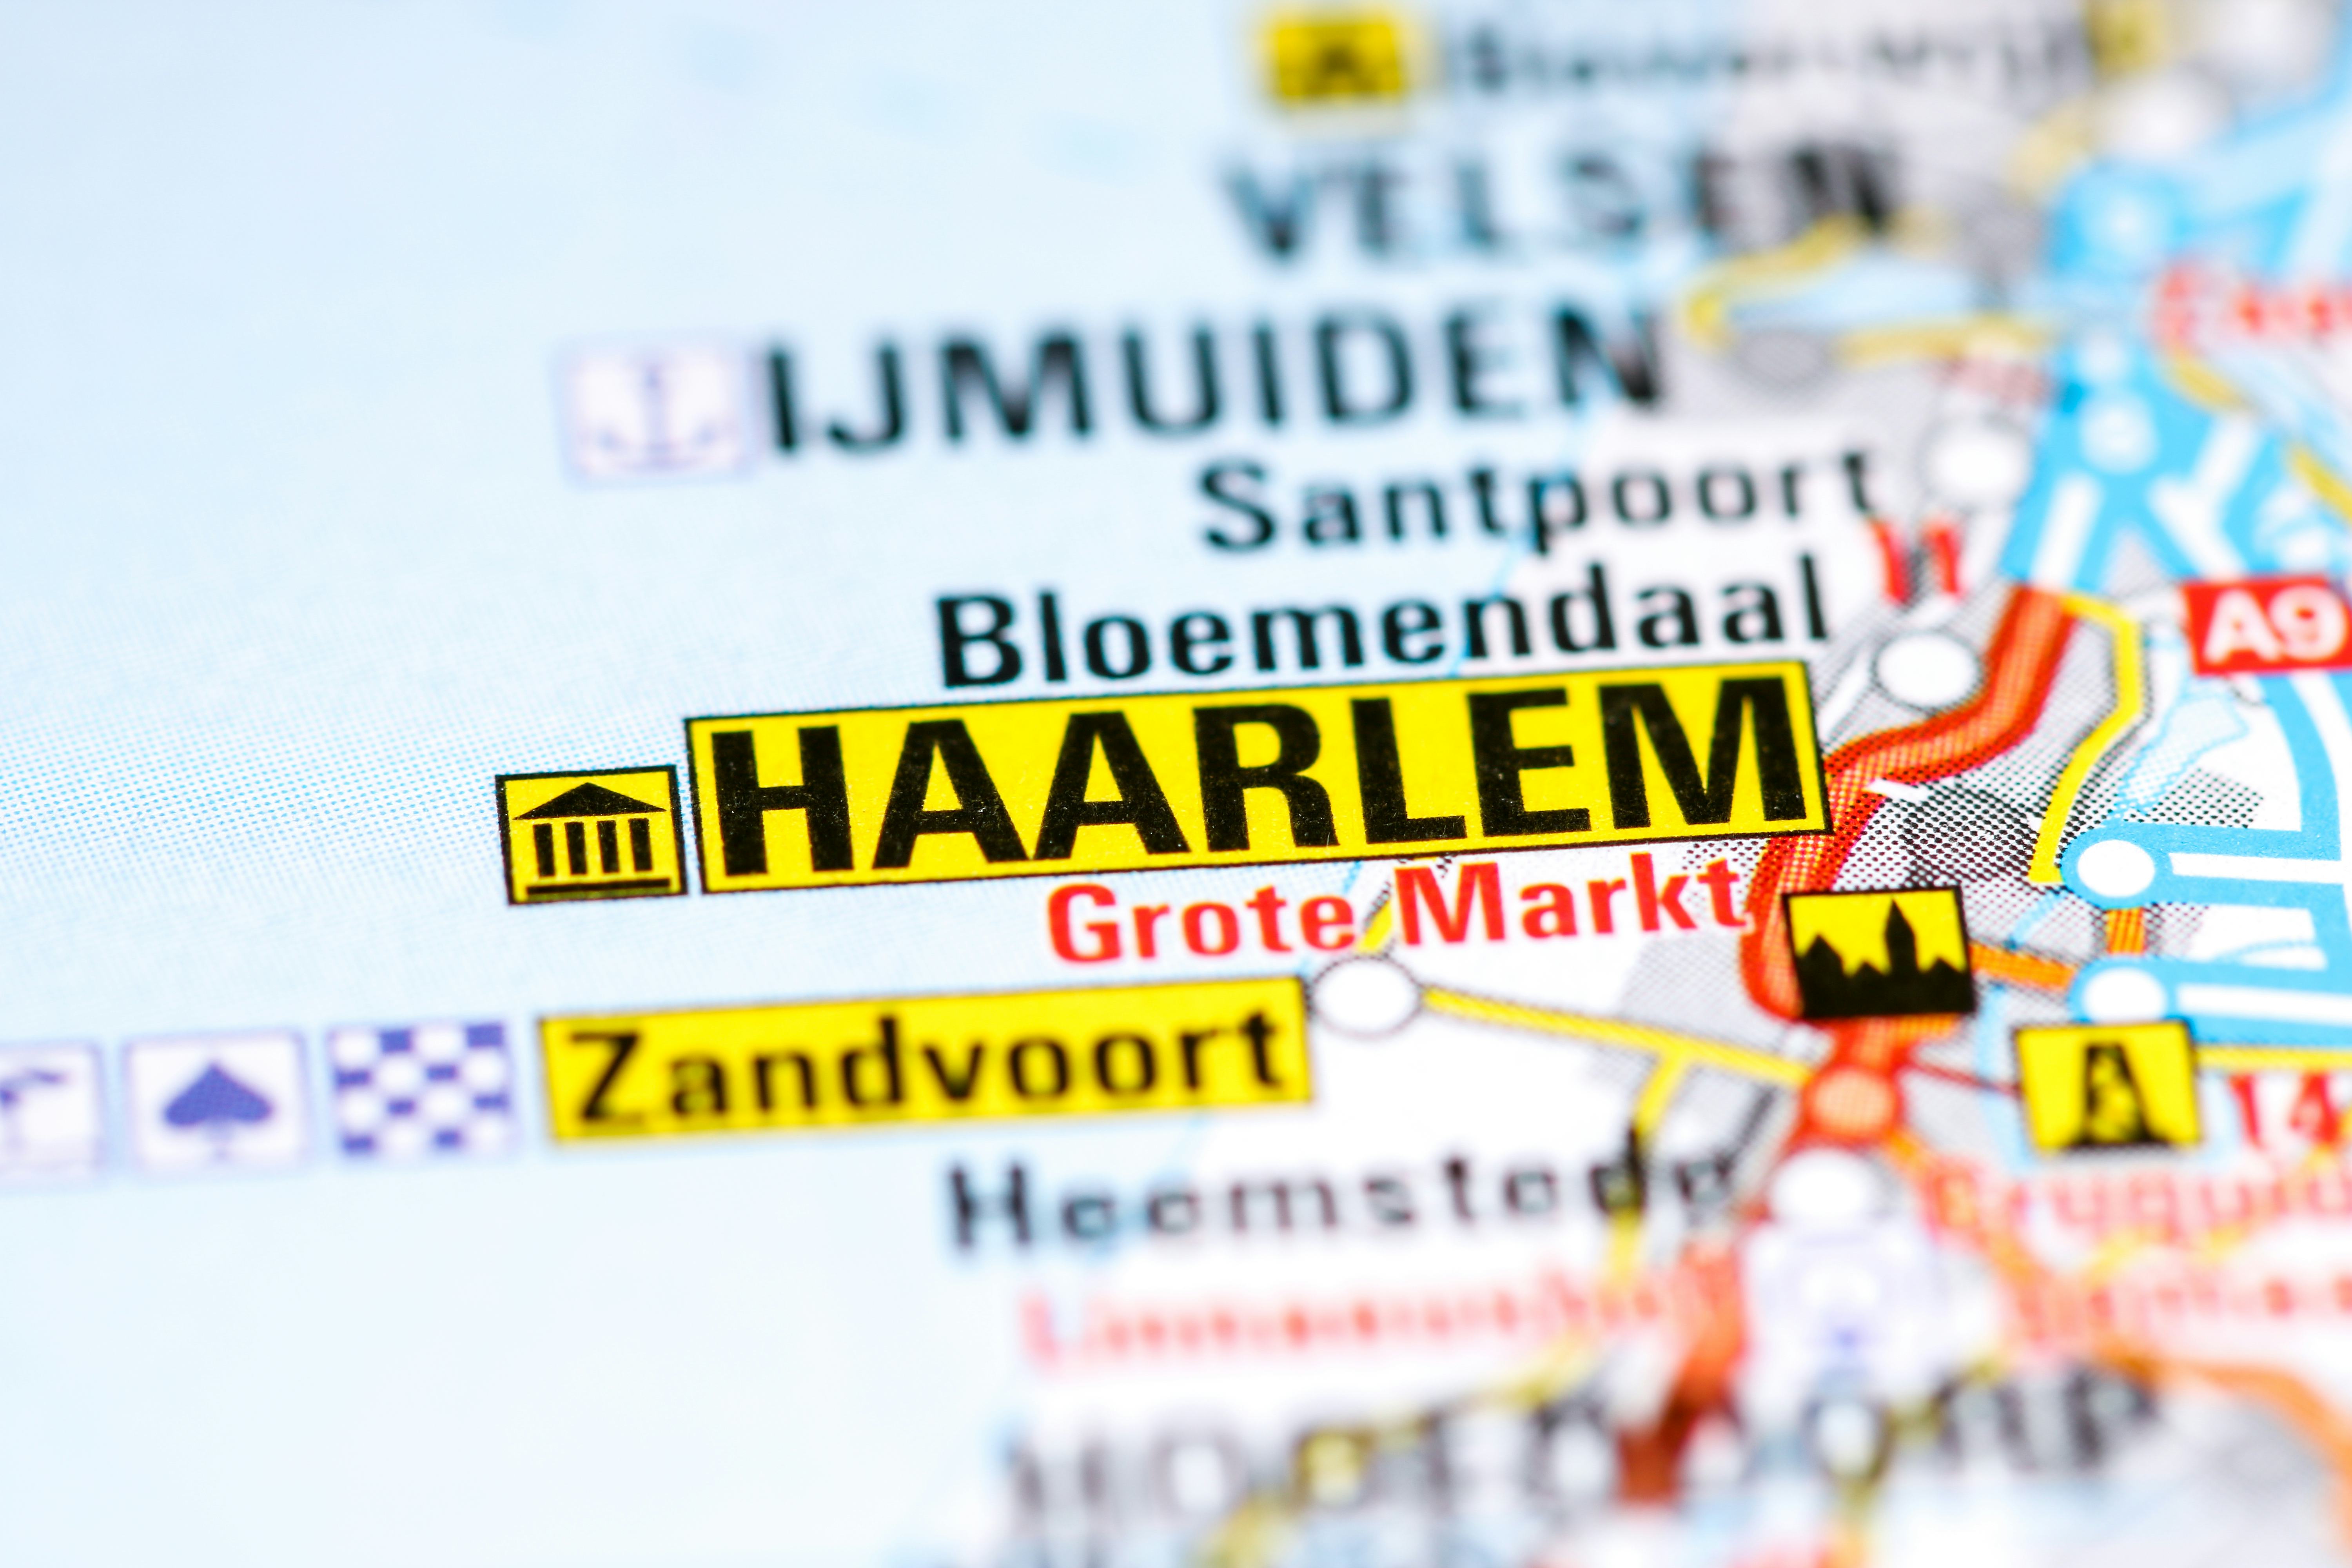 Haarlem eerste Gastronomische Hoofdstad van Nederland in 2019